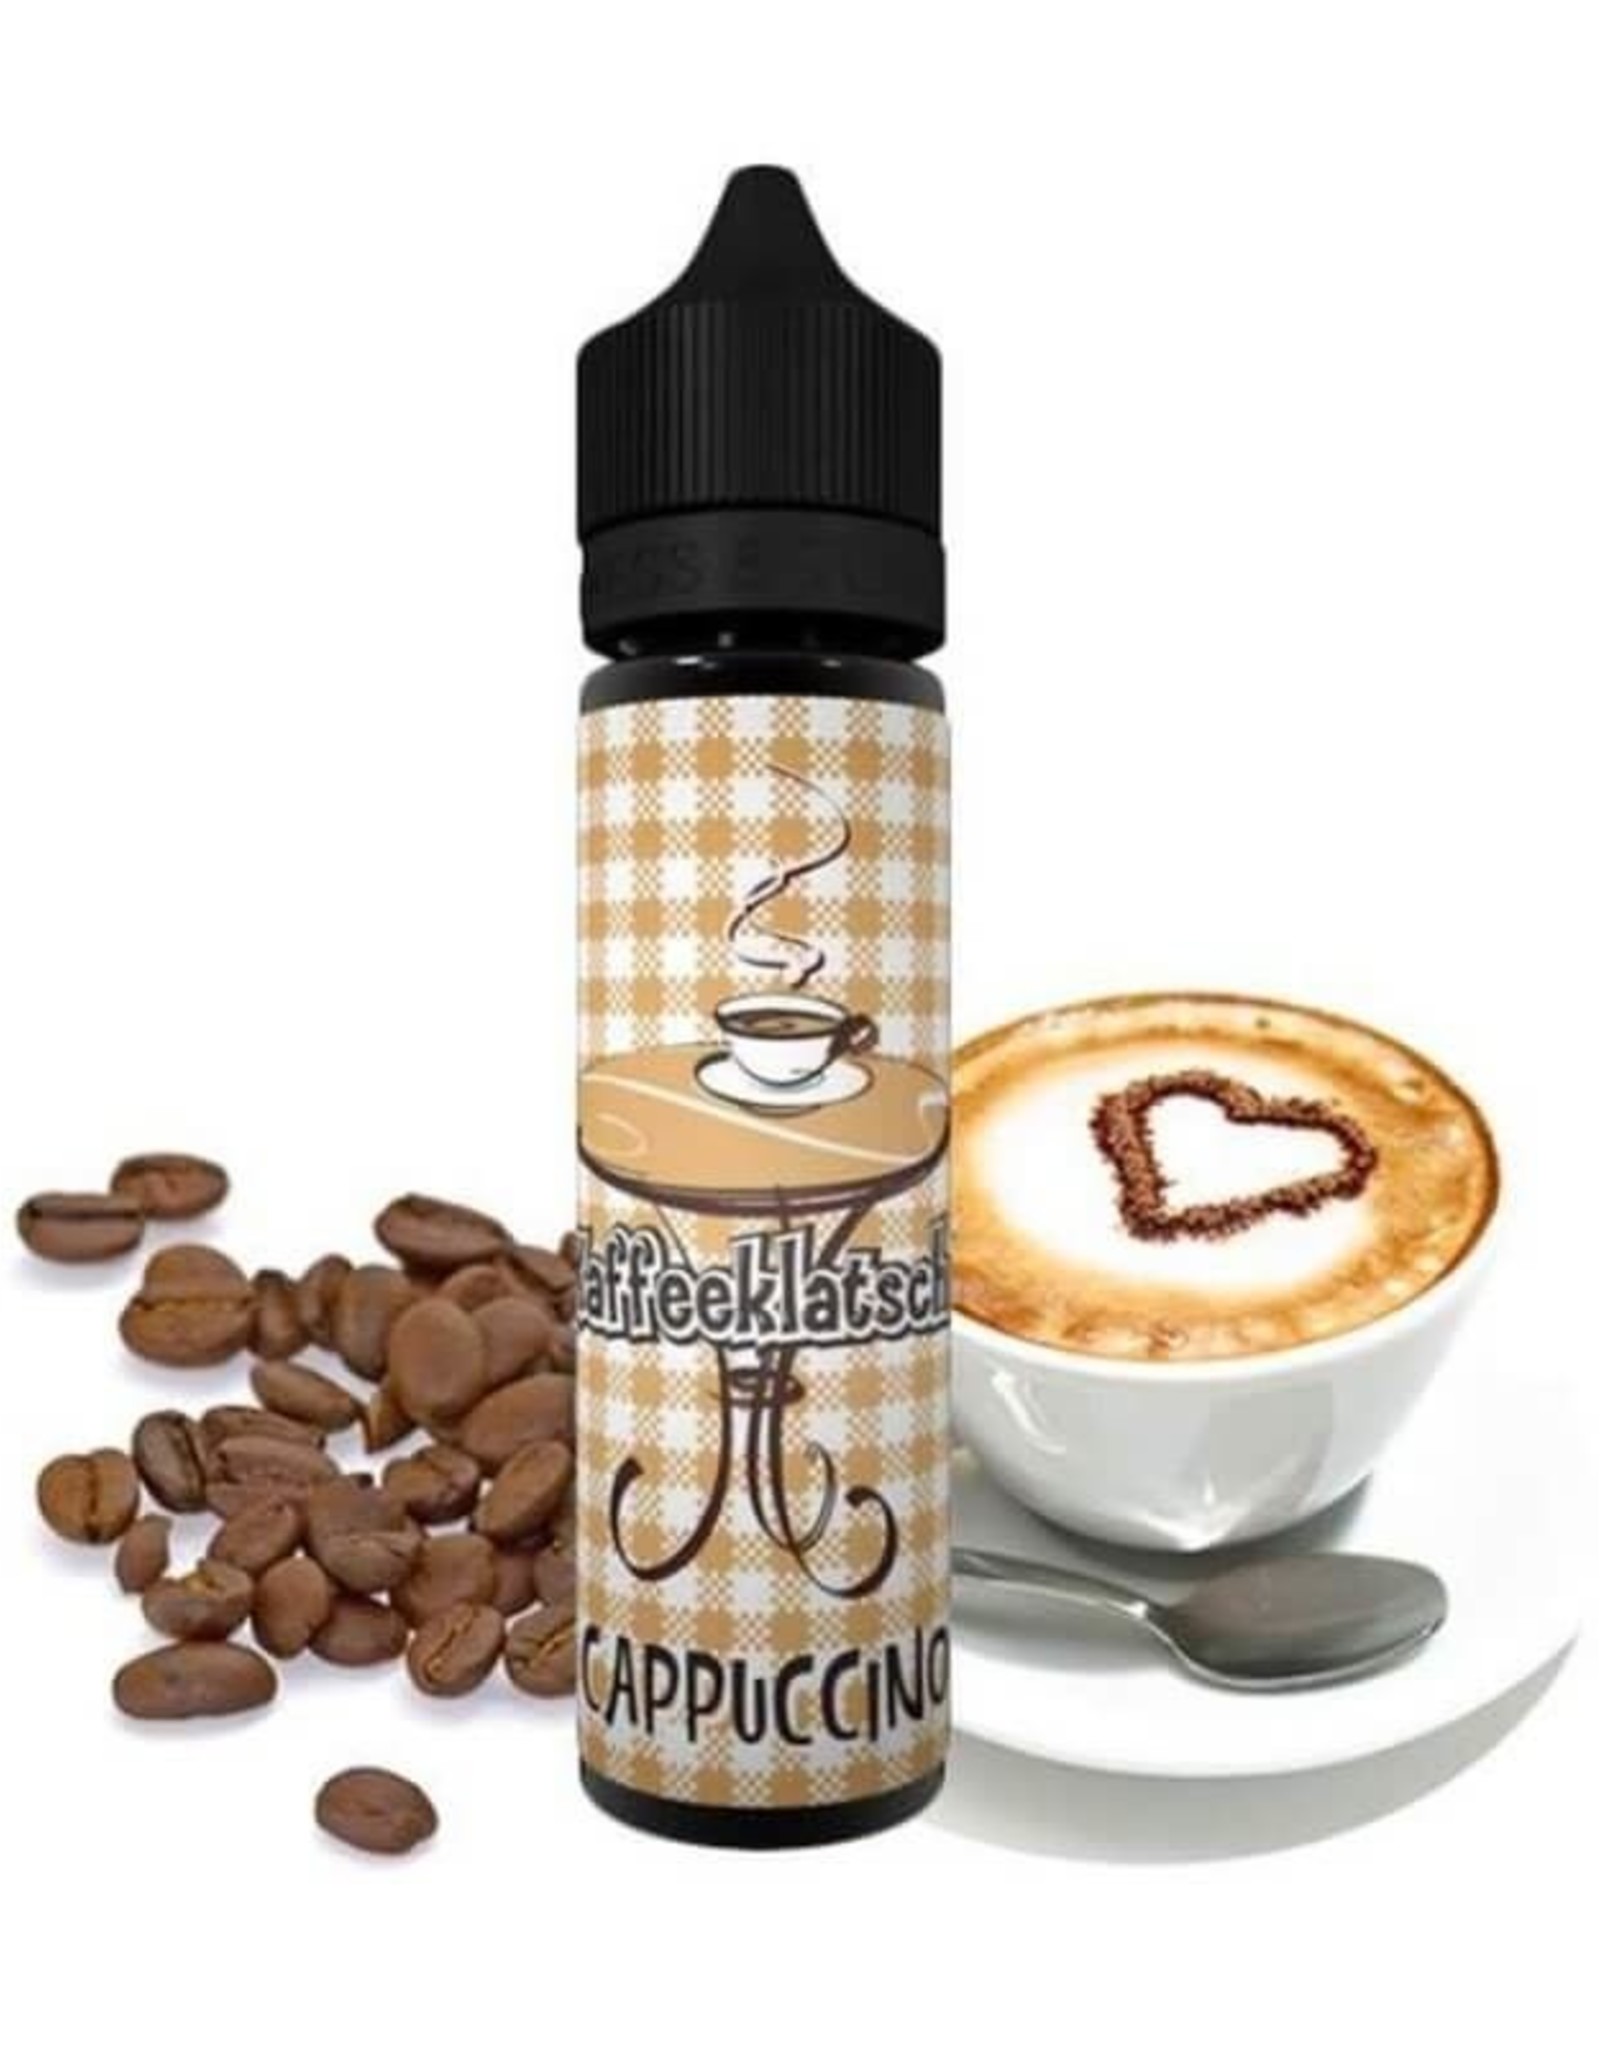 Kaffeeklatsch Kaffeeklatsch - Cappuccino 20ml